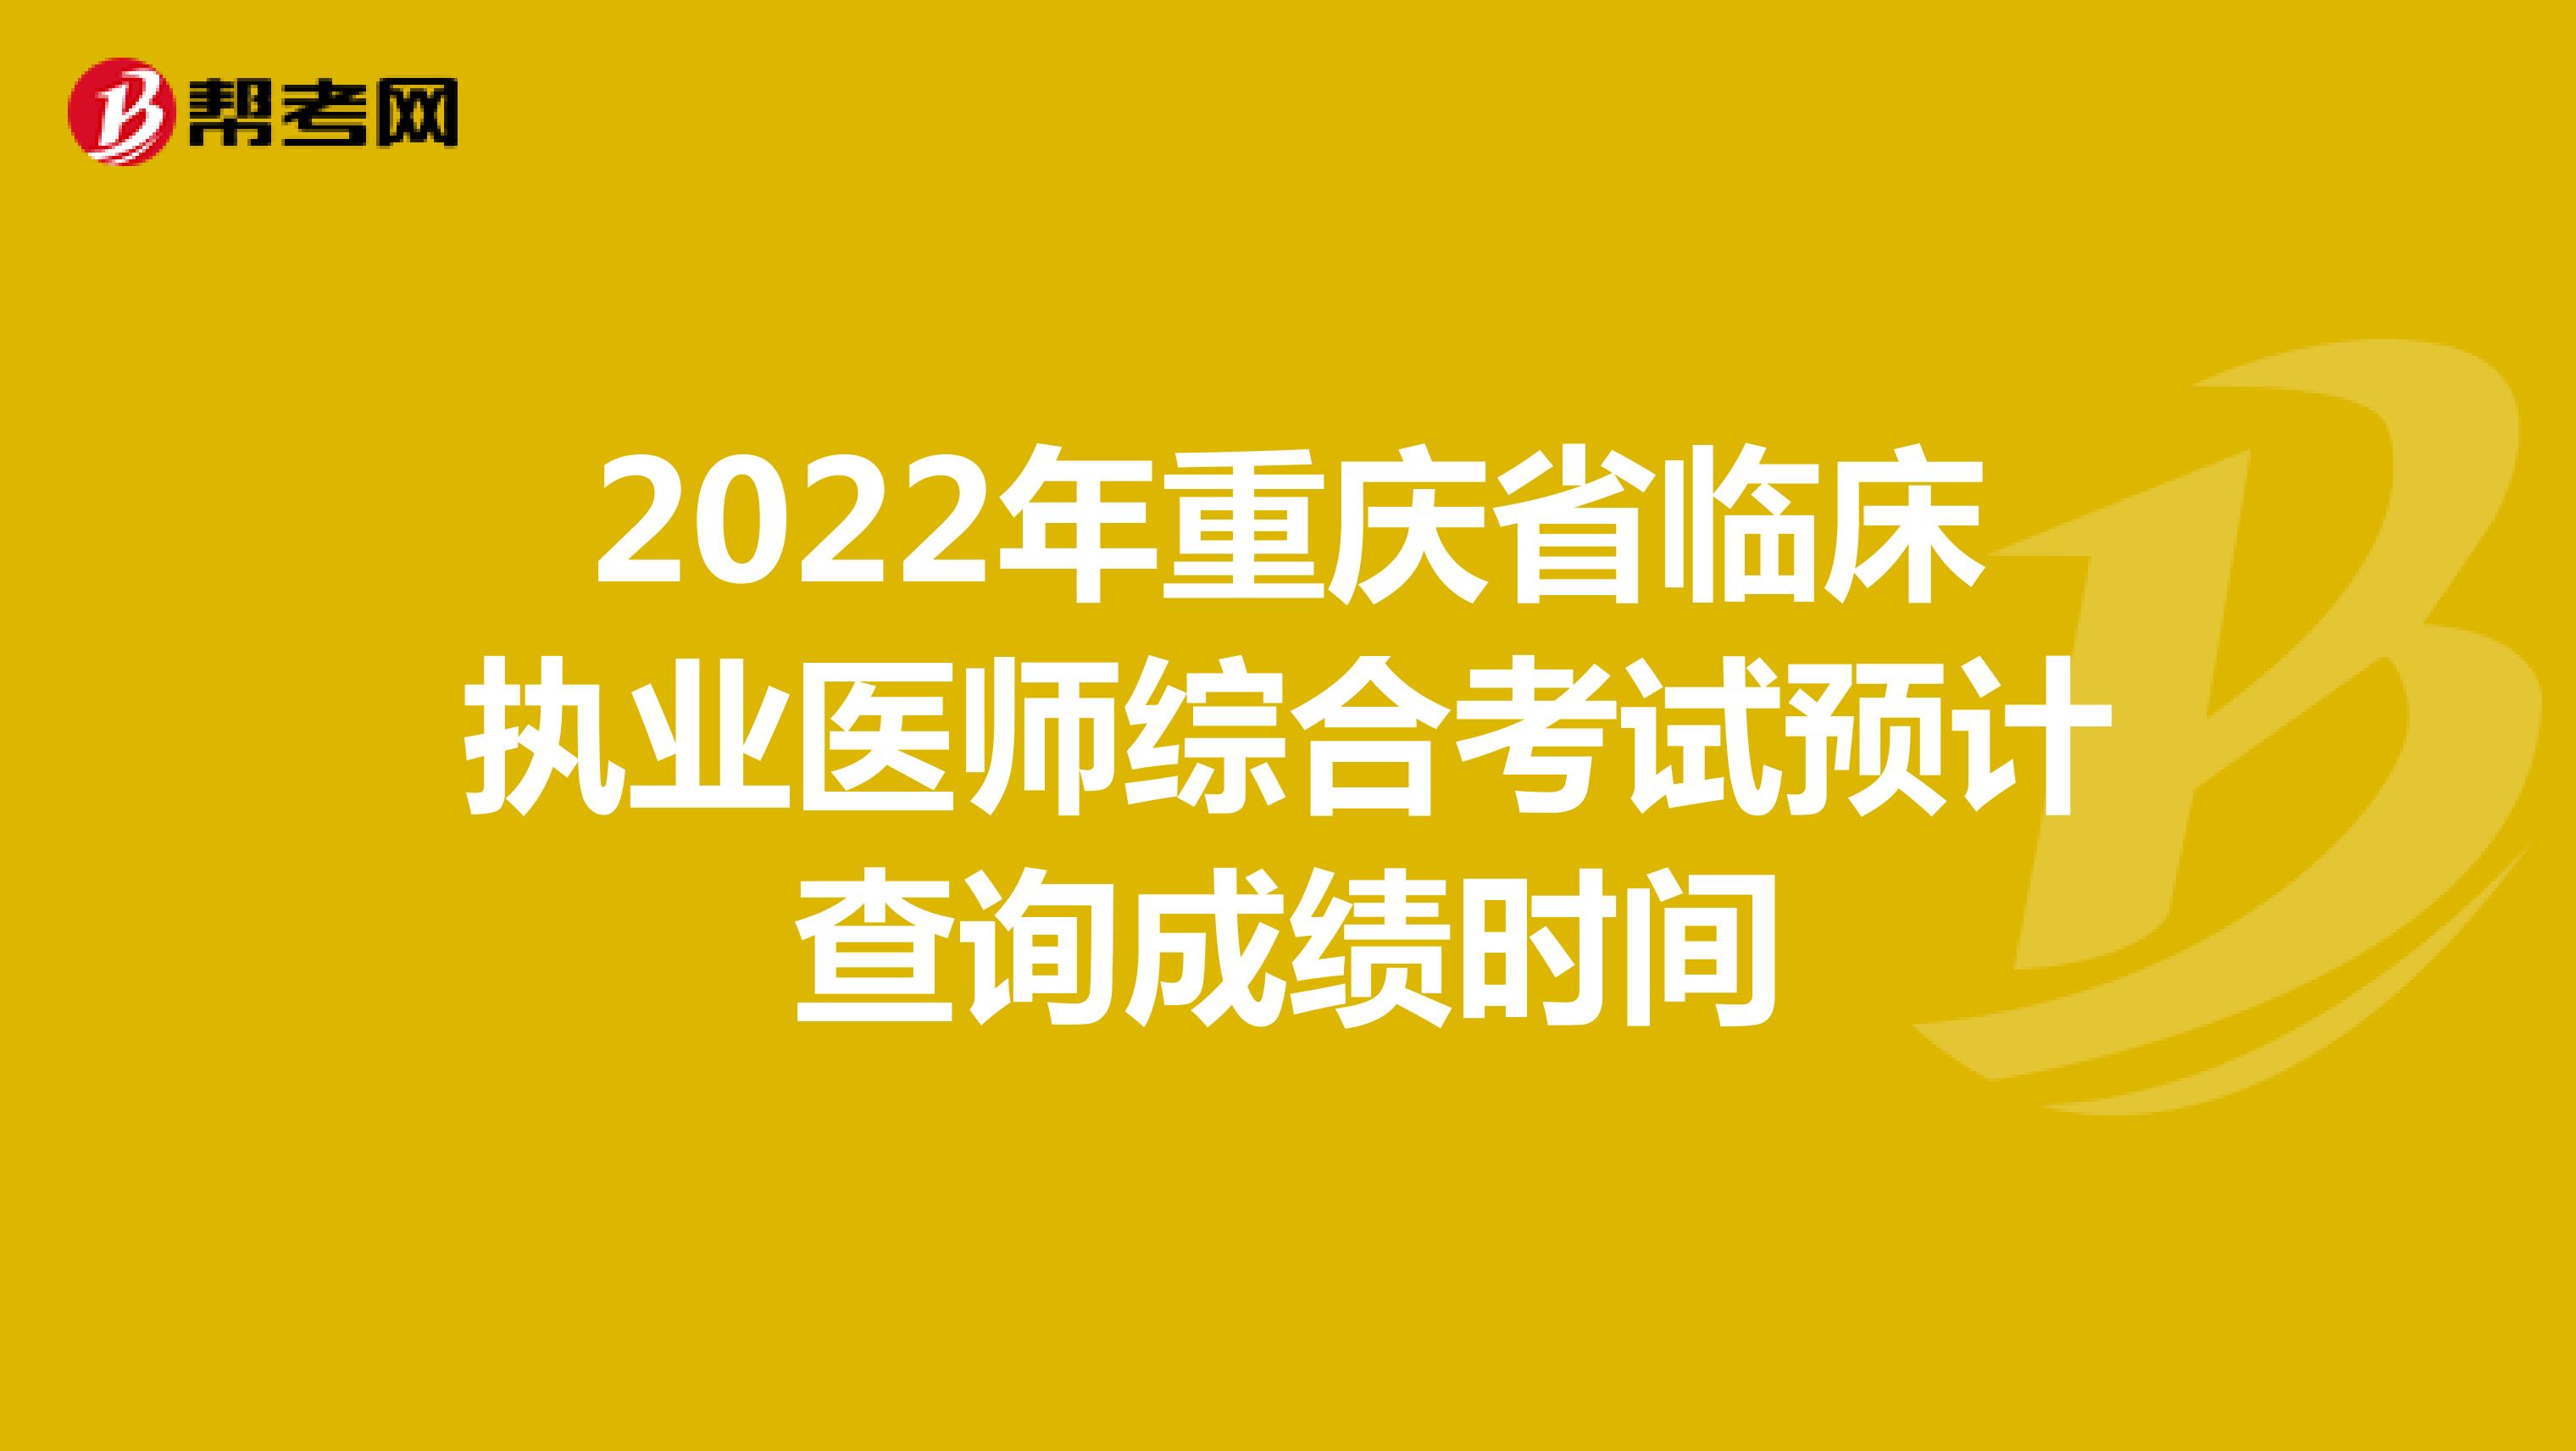 2022年重庆临床执业医师综合考试预计查询成绩时间